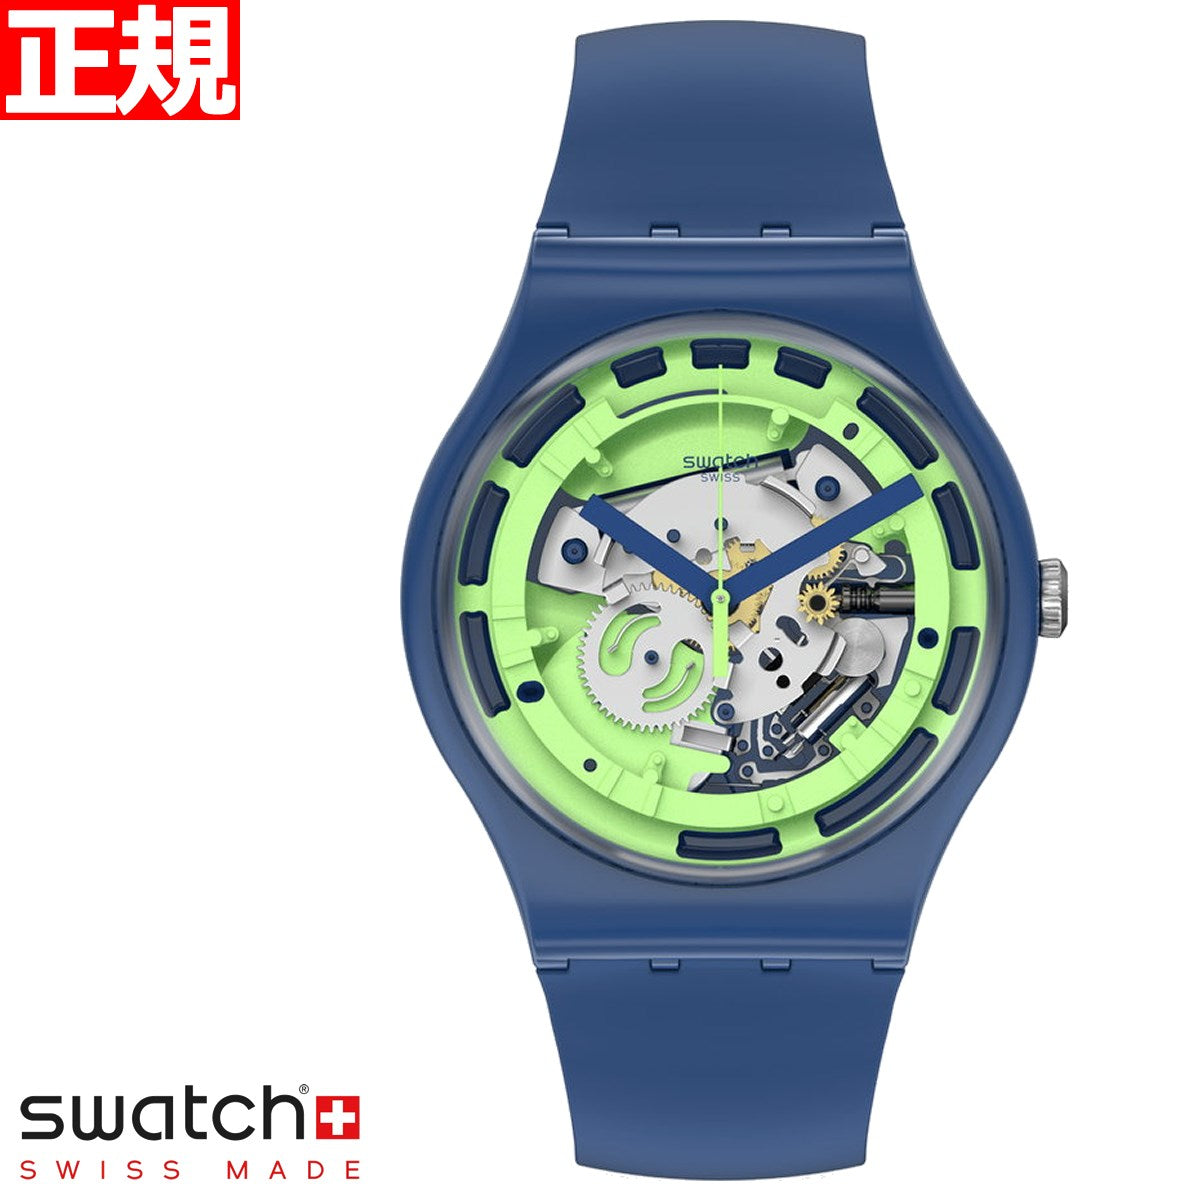 《人気》swatch 腕時計 シルバー スケルトン 自動巻き メンズ